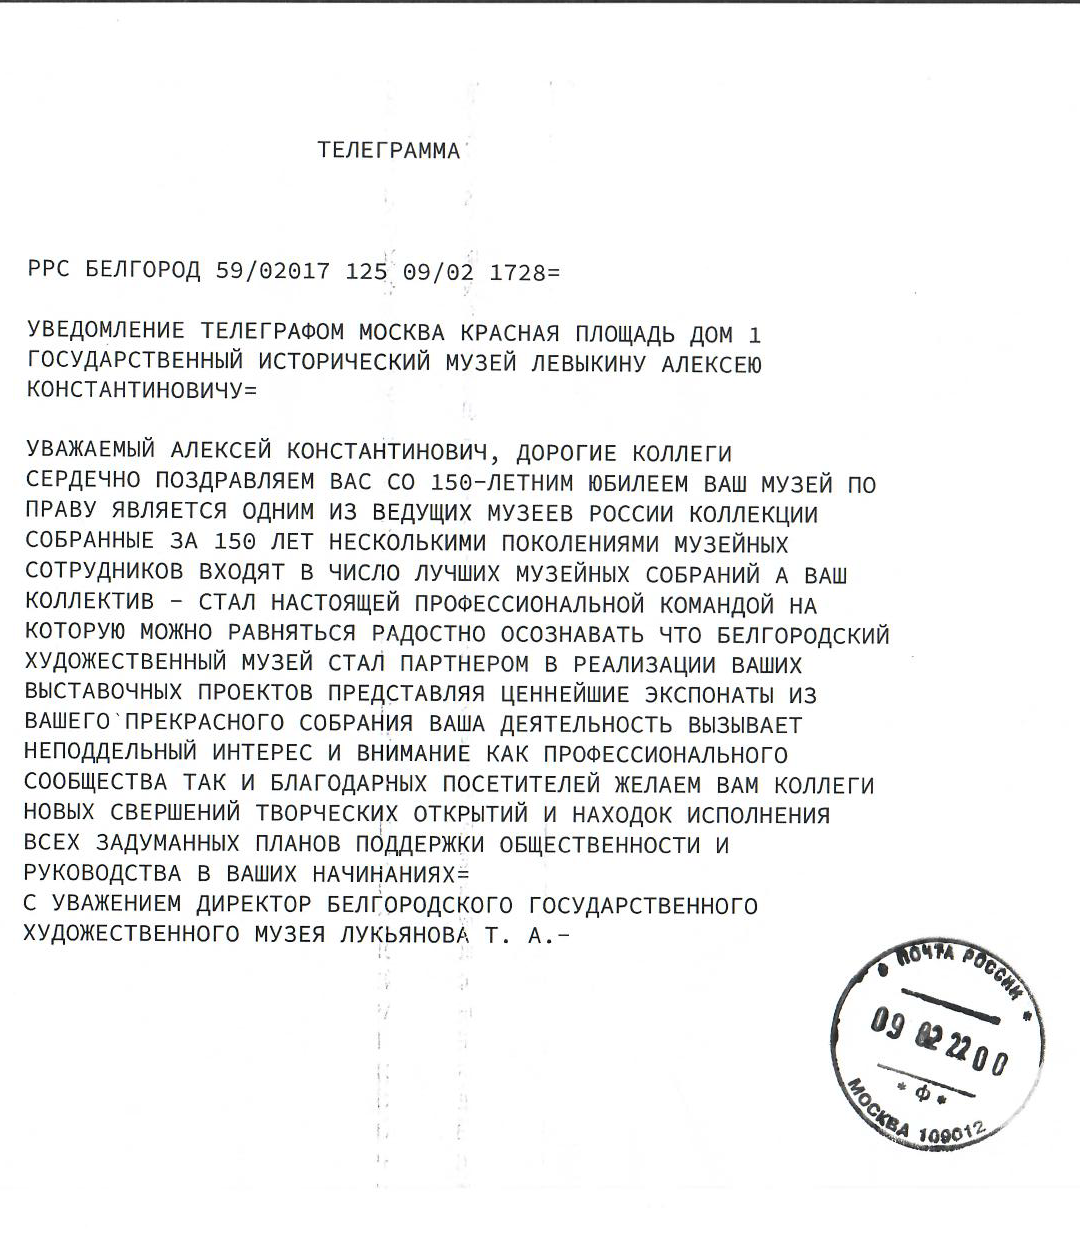 Телеграмма от директора Белгородского художественного музея Лукьяновой Т. А.